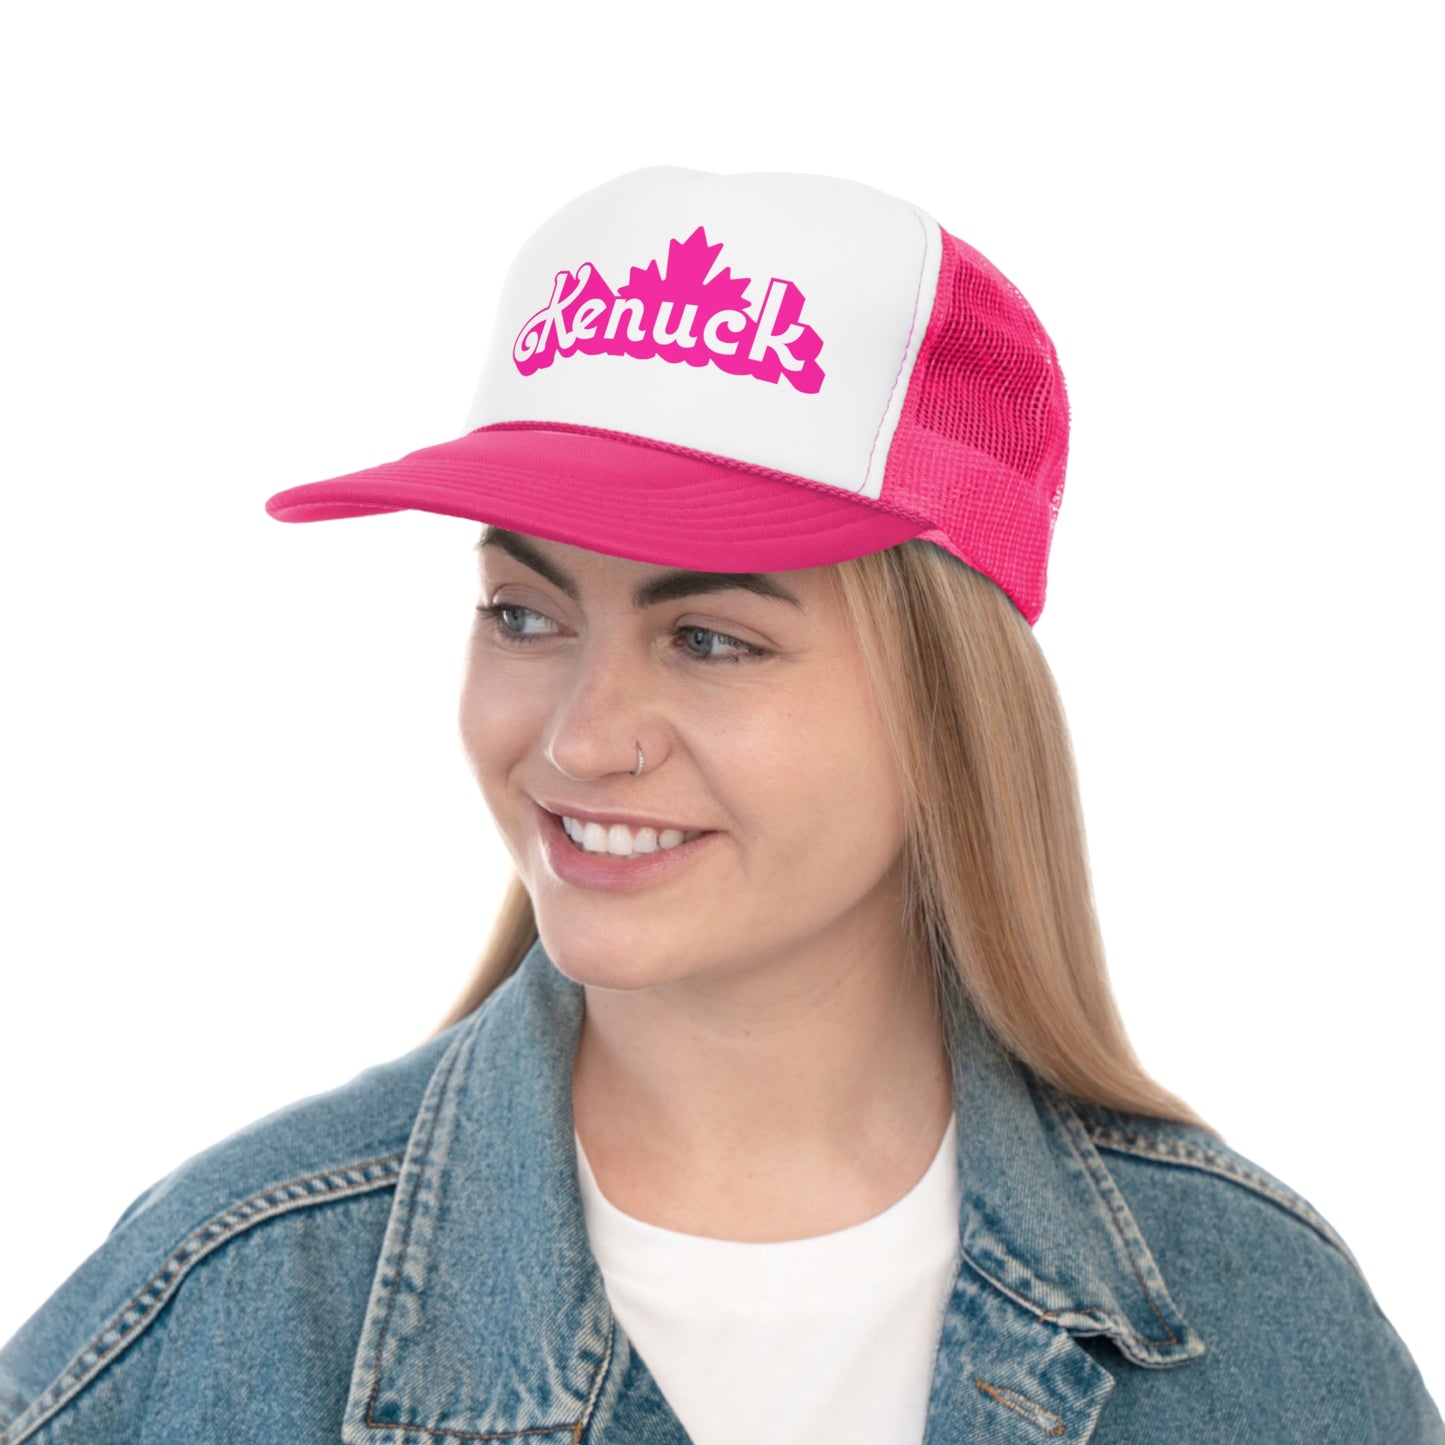 Kenuck Trucker Hat